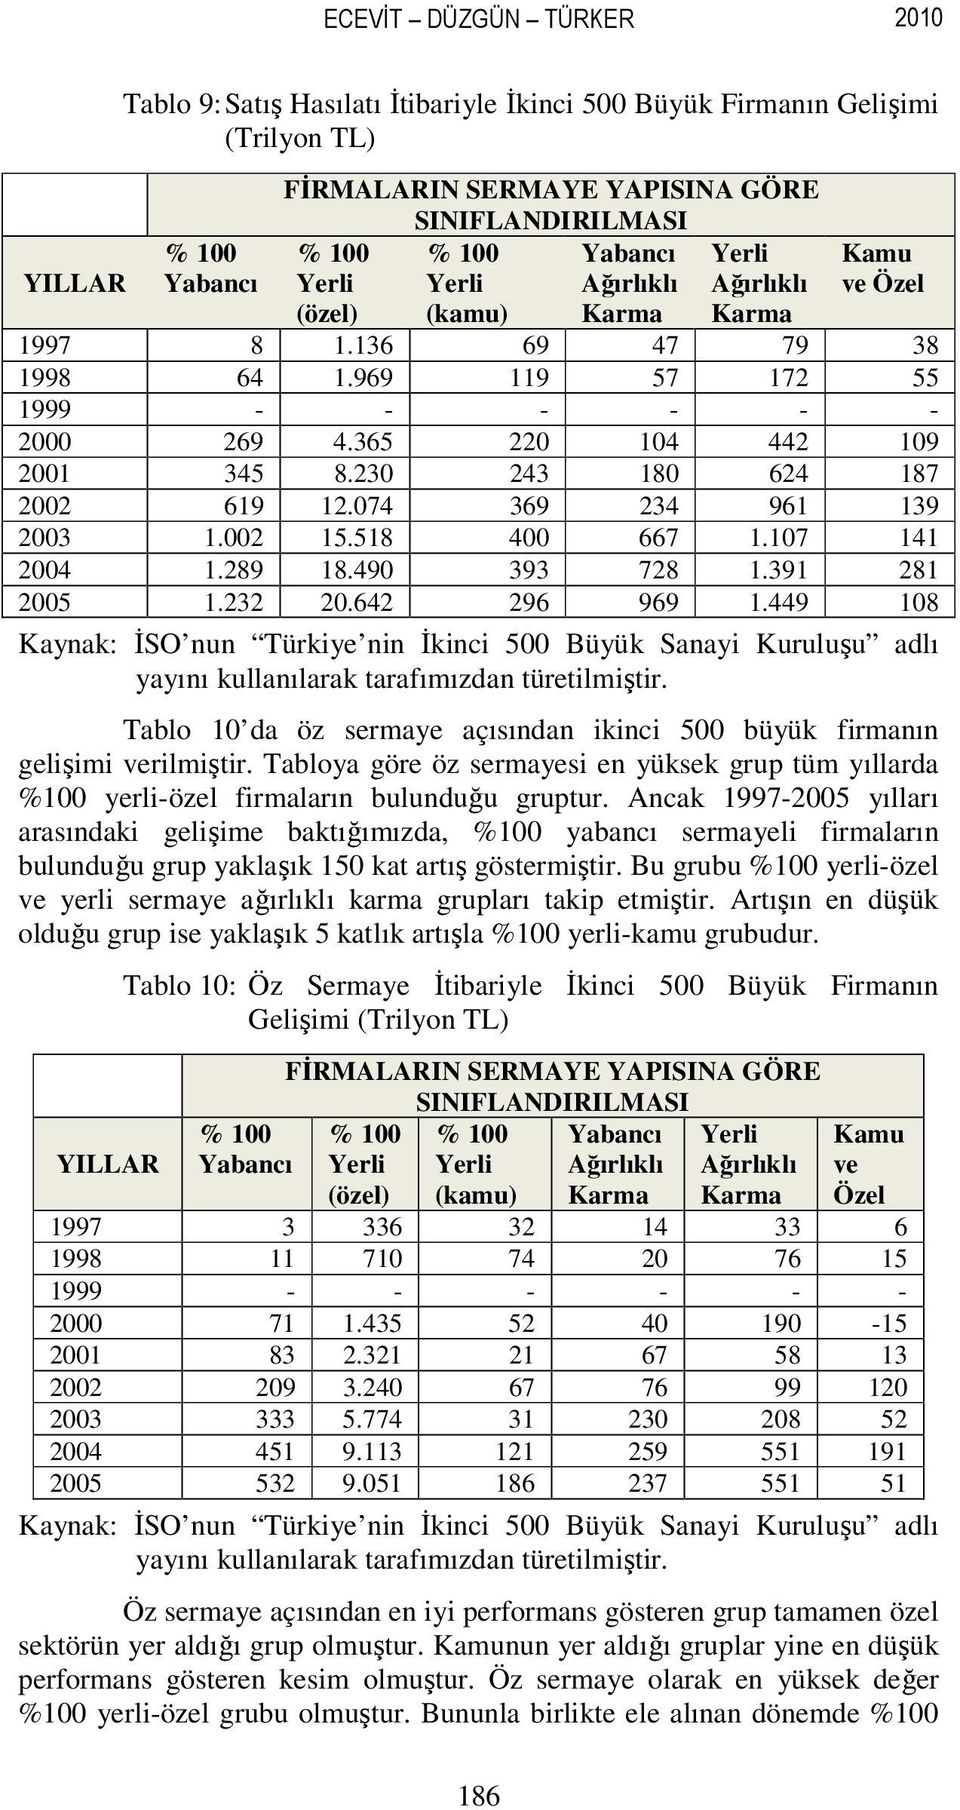 391 281 2005 1.232 20.642 296 969 1.449 108 Kaynak: İSO nun Türkiye nin İkinci 500 Büyük Sanayi Kuruluşu adlı yayını kullanılarak tarafımızdan türetilmiştir.